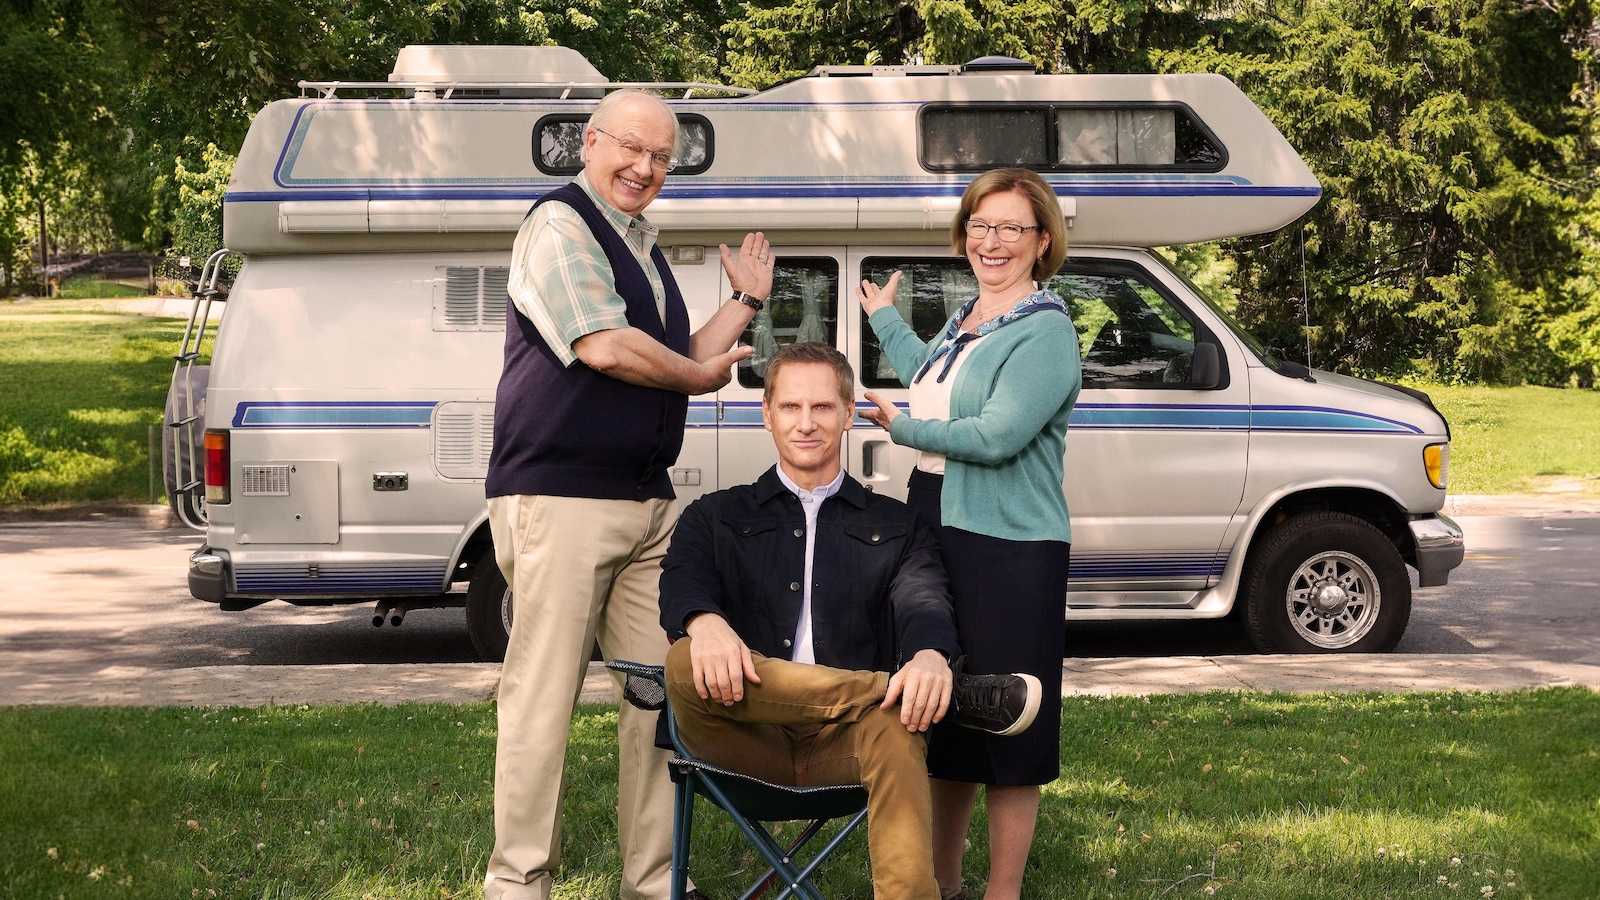 François est assis dans une chaise de camping; ses parents debout de chaque côté montre leur véhicule récréatif.